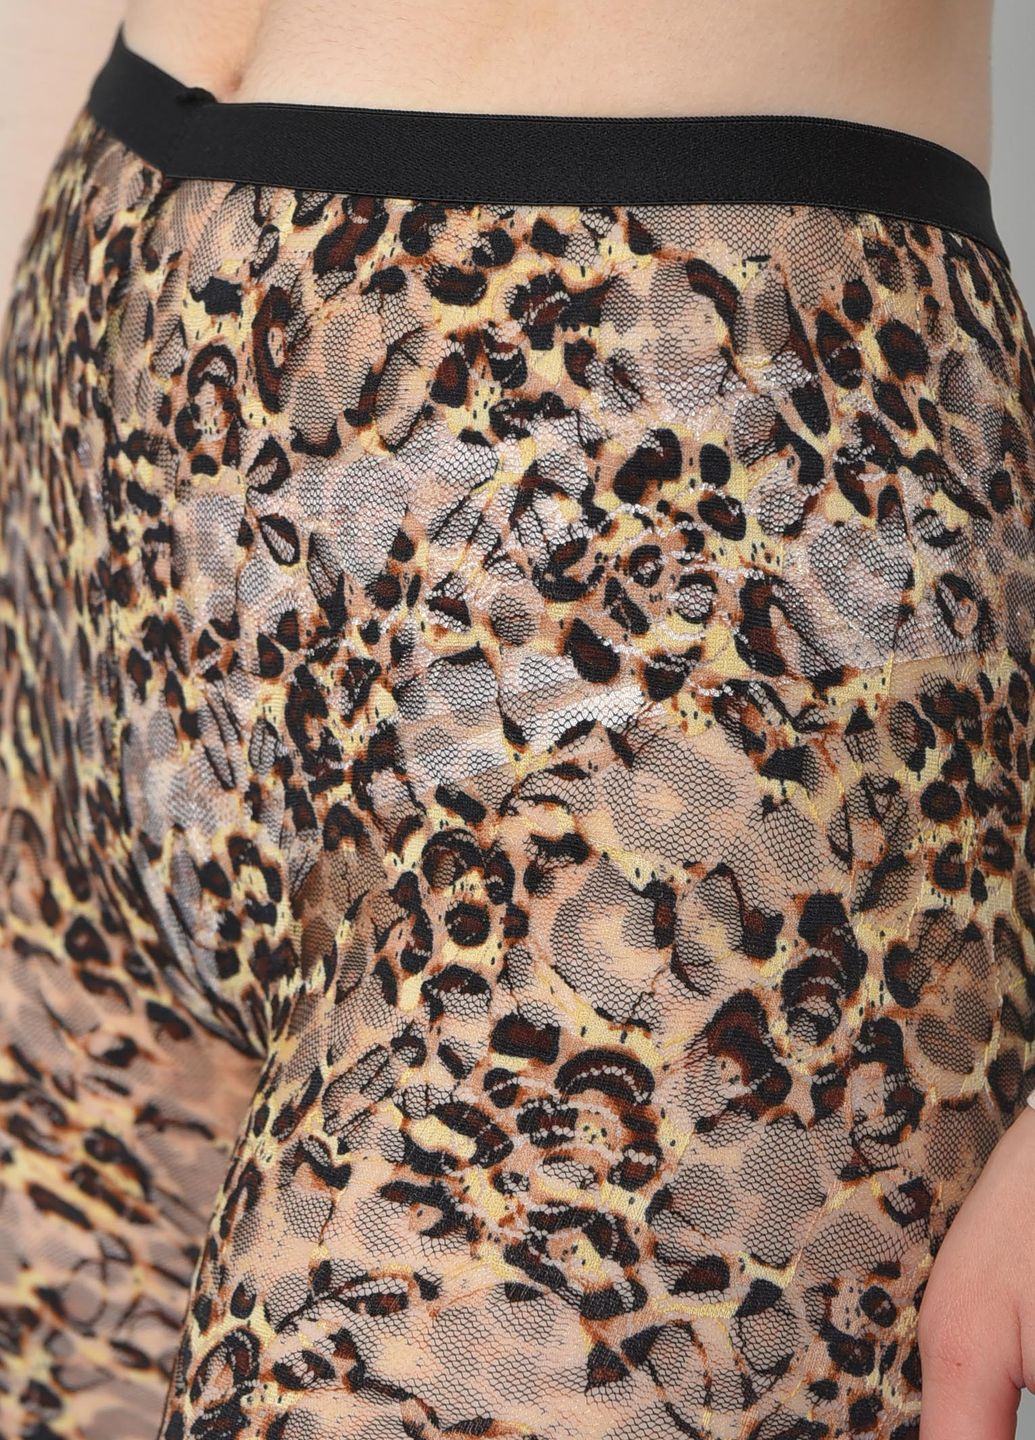 Бриджи женские гипюровые леопардового цвета размер 44 Let's Shop (268738441)